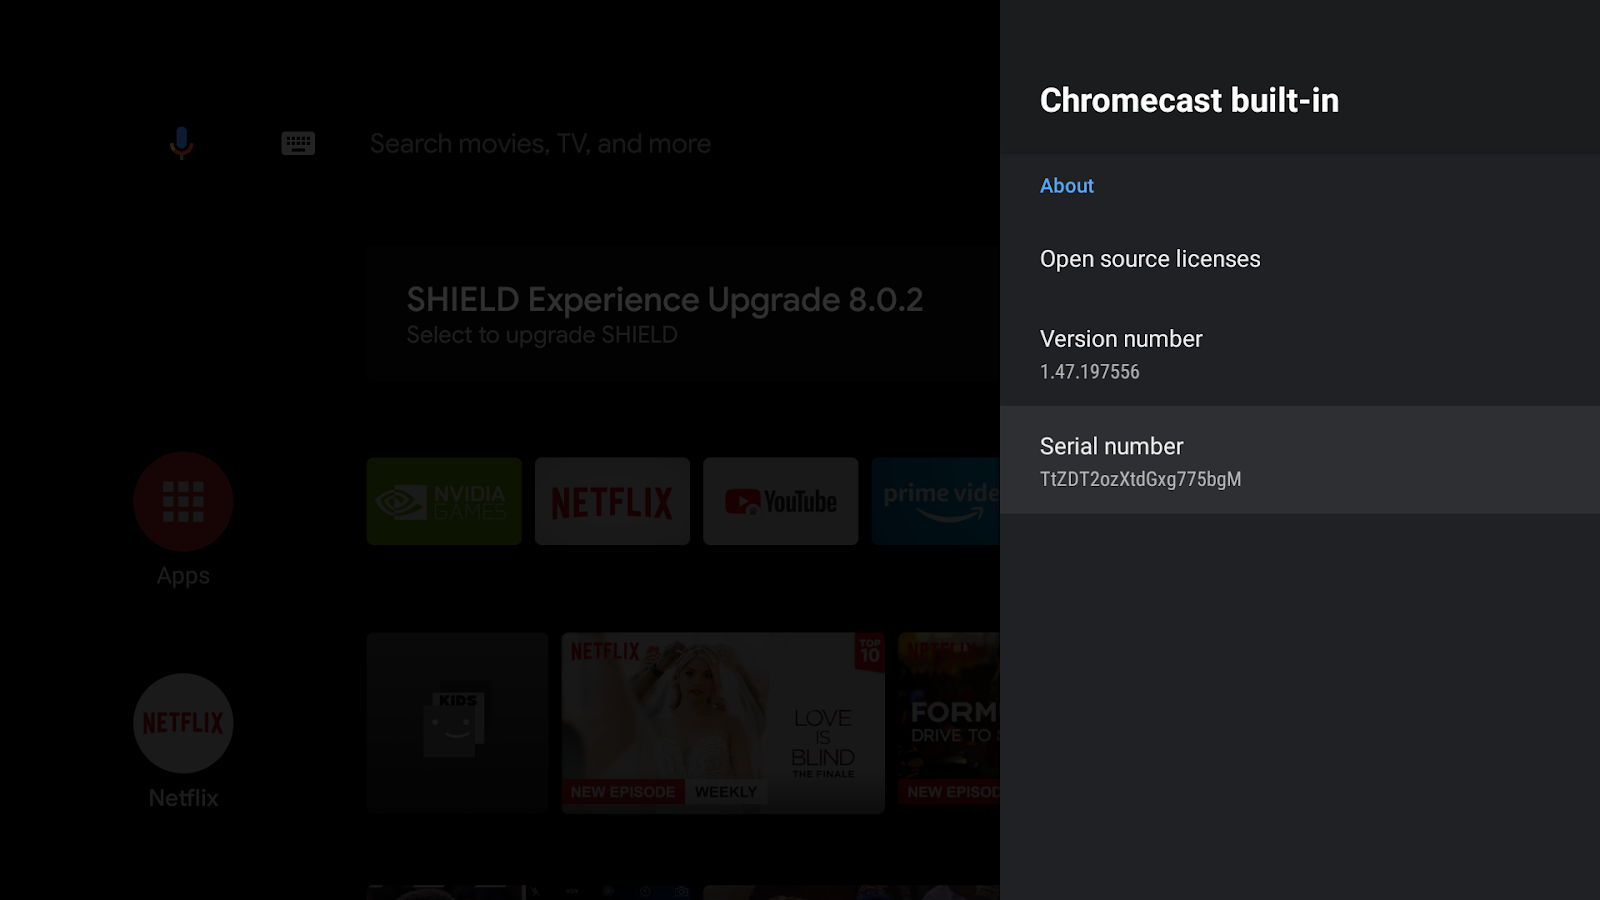 Android TV की स्क्रीन की इमेज, जिसमें &#39;Chromecast बिल्ट-इन&#39; स्क्रीन, वर्शन नंबर, और सीरियल नंबर दिख रहे हैं